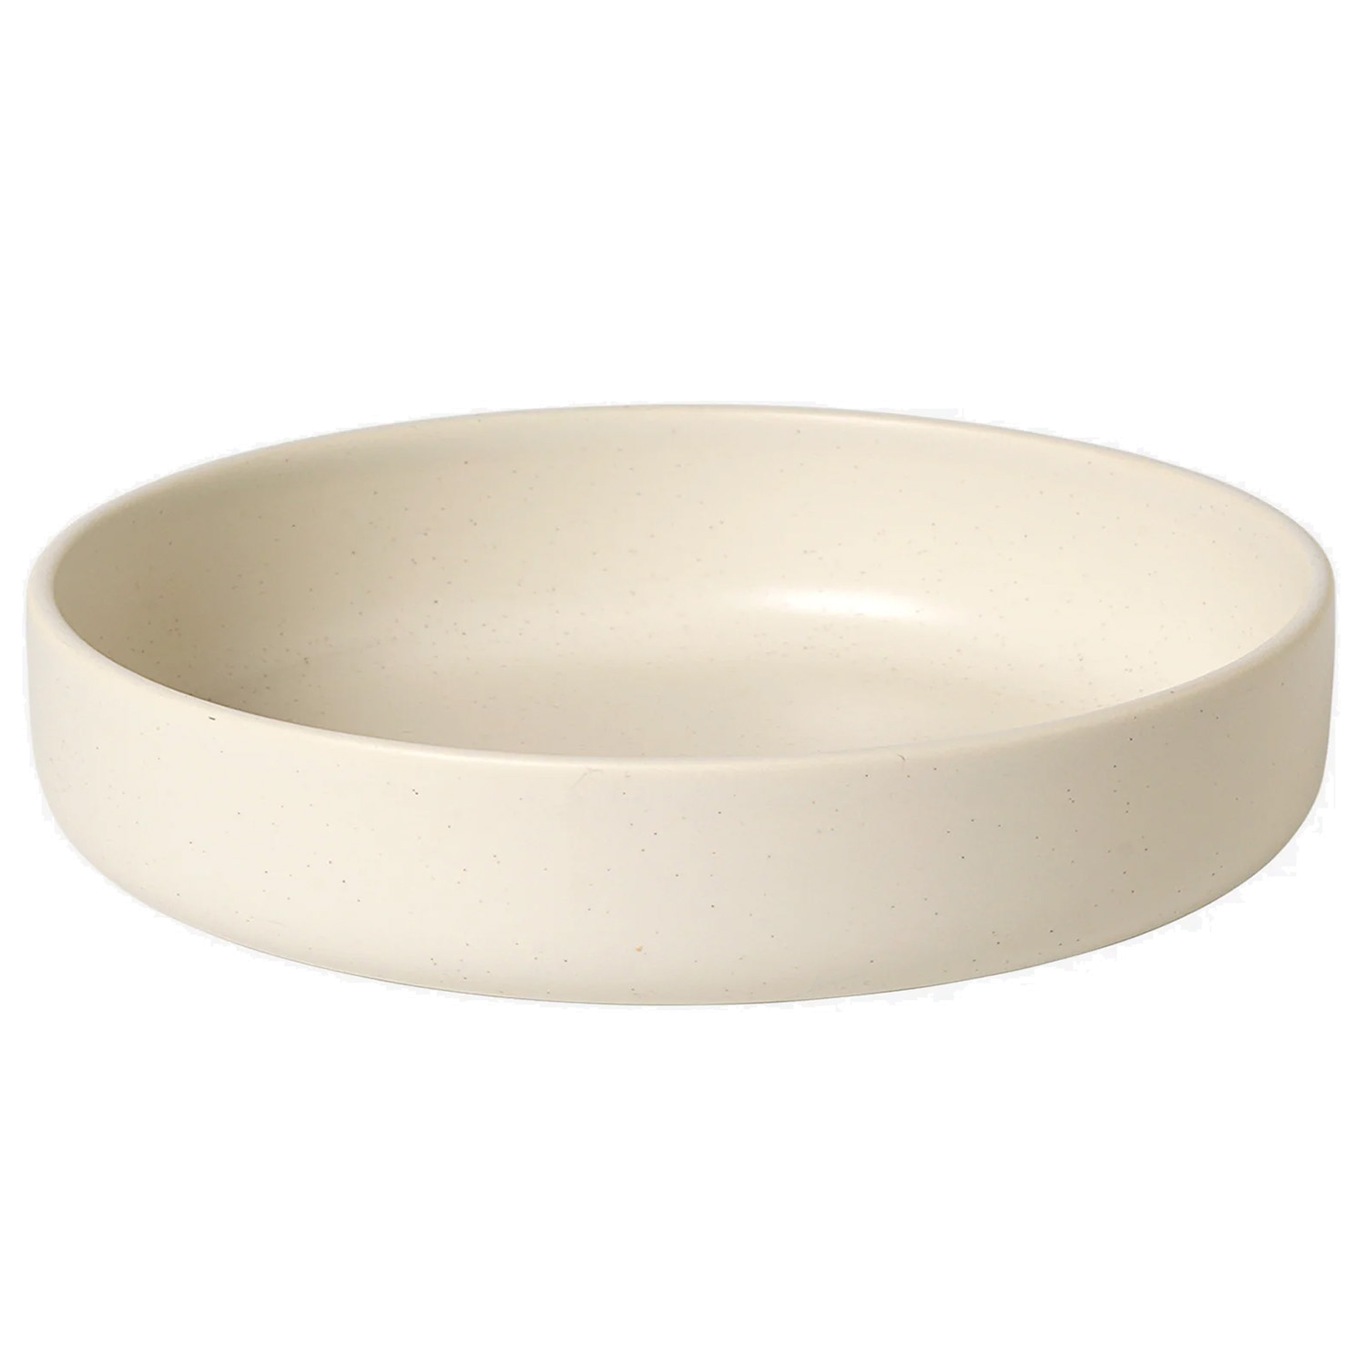 Ceramic Pisu Teller Ø21 cm, Vanilla White